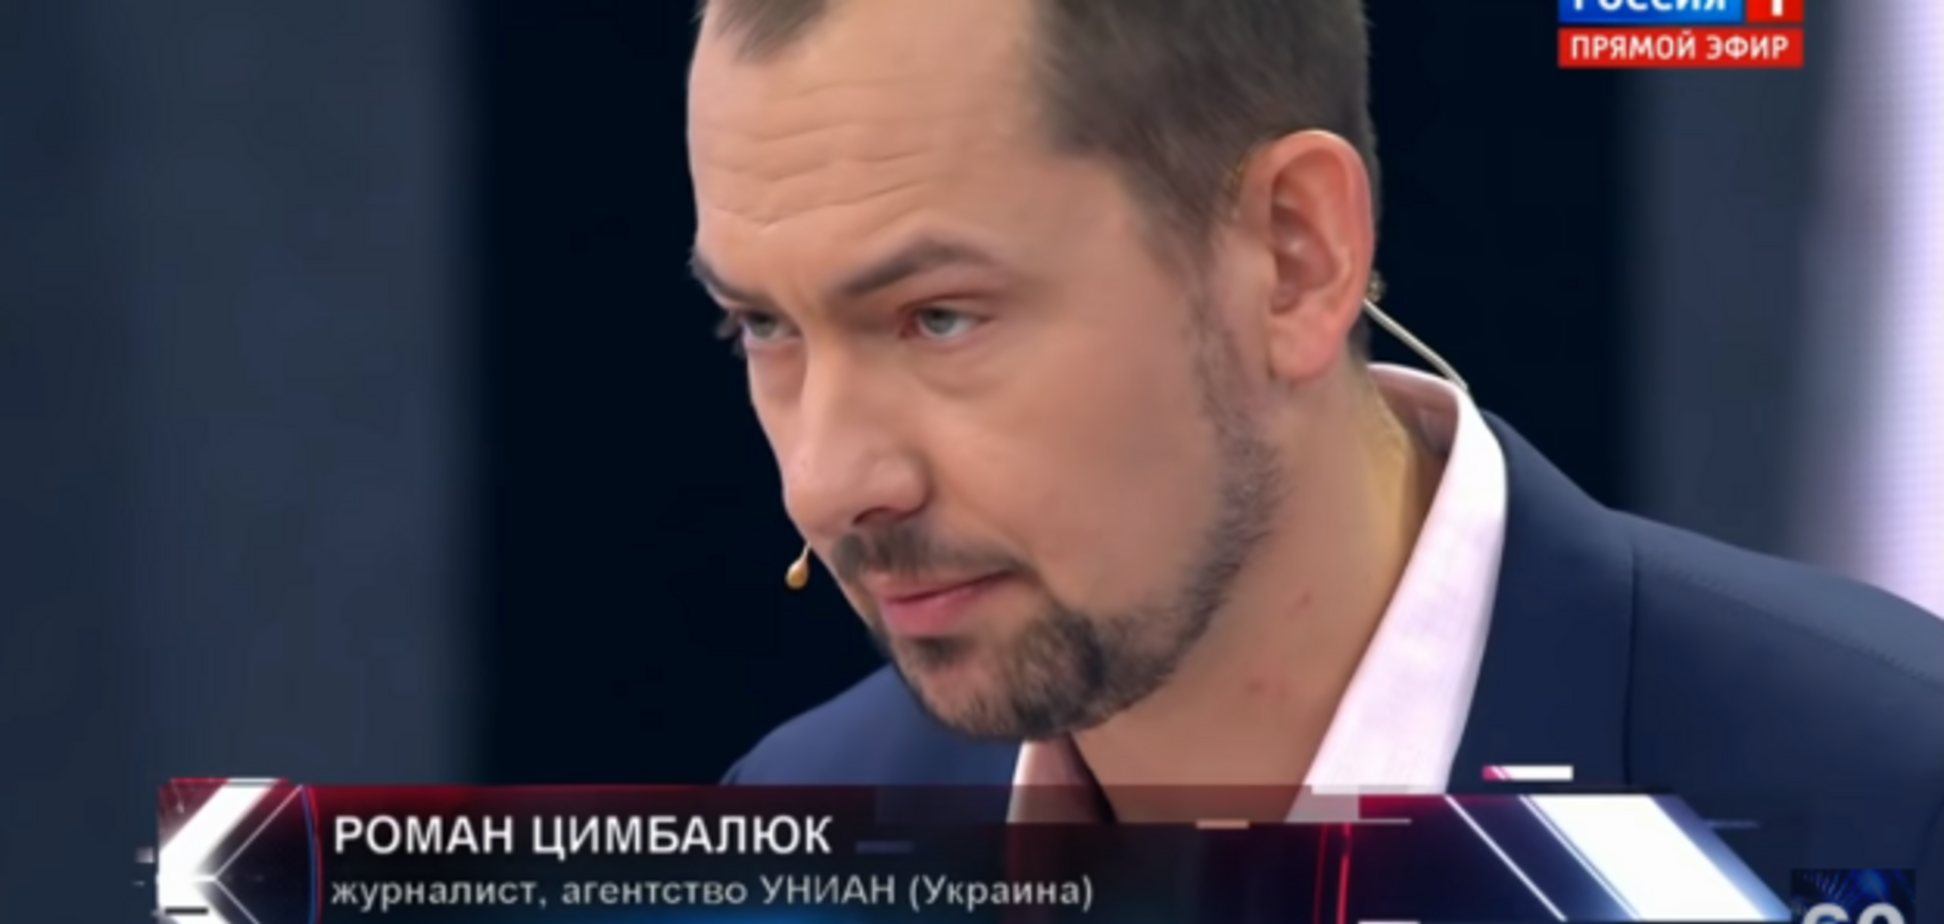 'Украина – страна счастья': украинский журналист дал отпор пропагандистам 